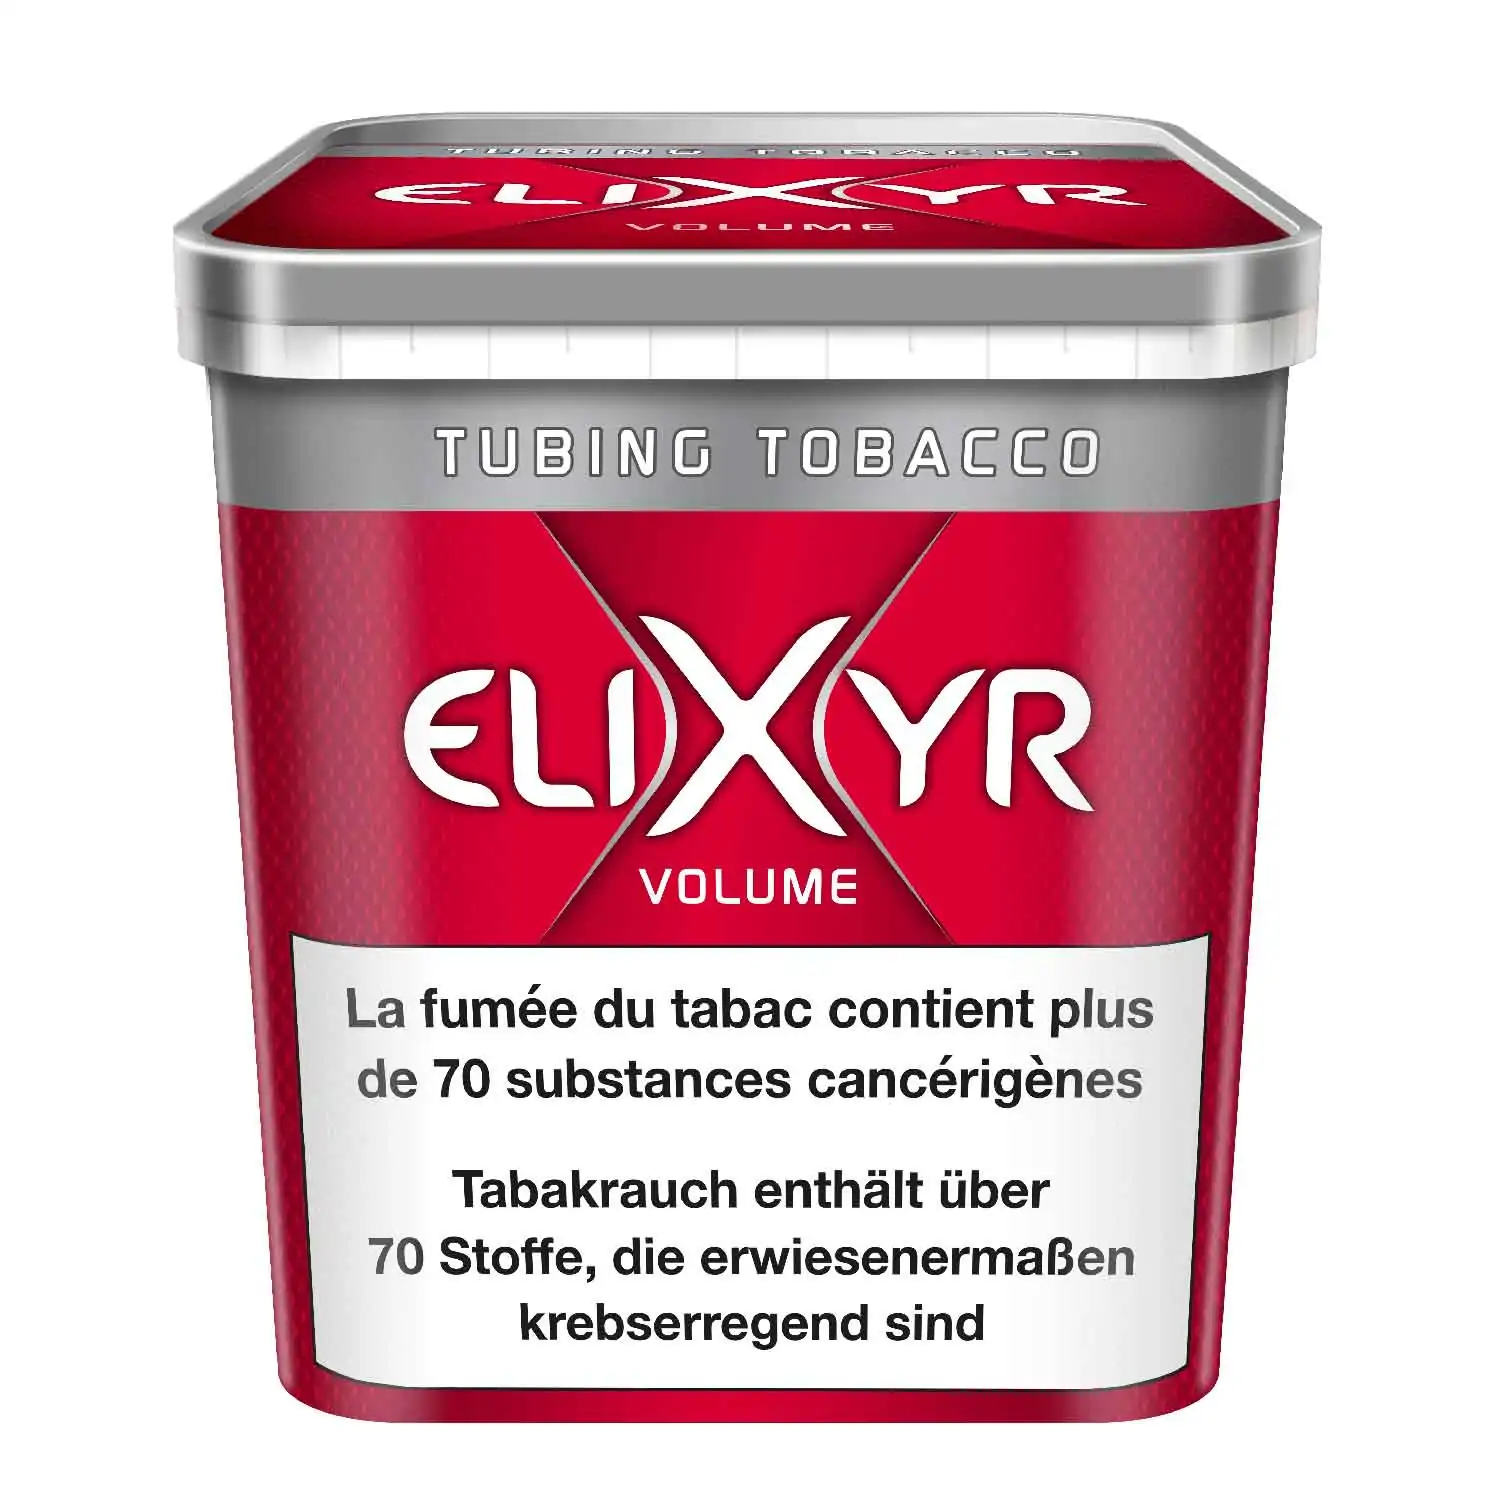 Elixyr volume maxx 500g - Buy at Real Tobacco